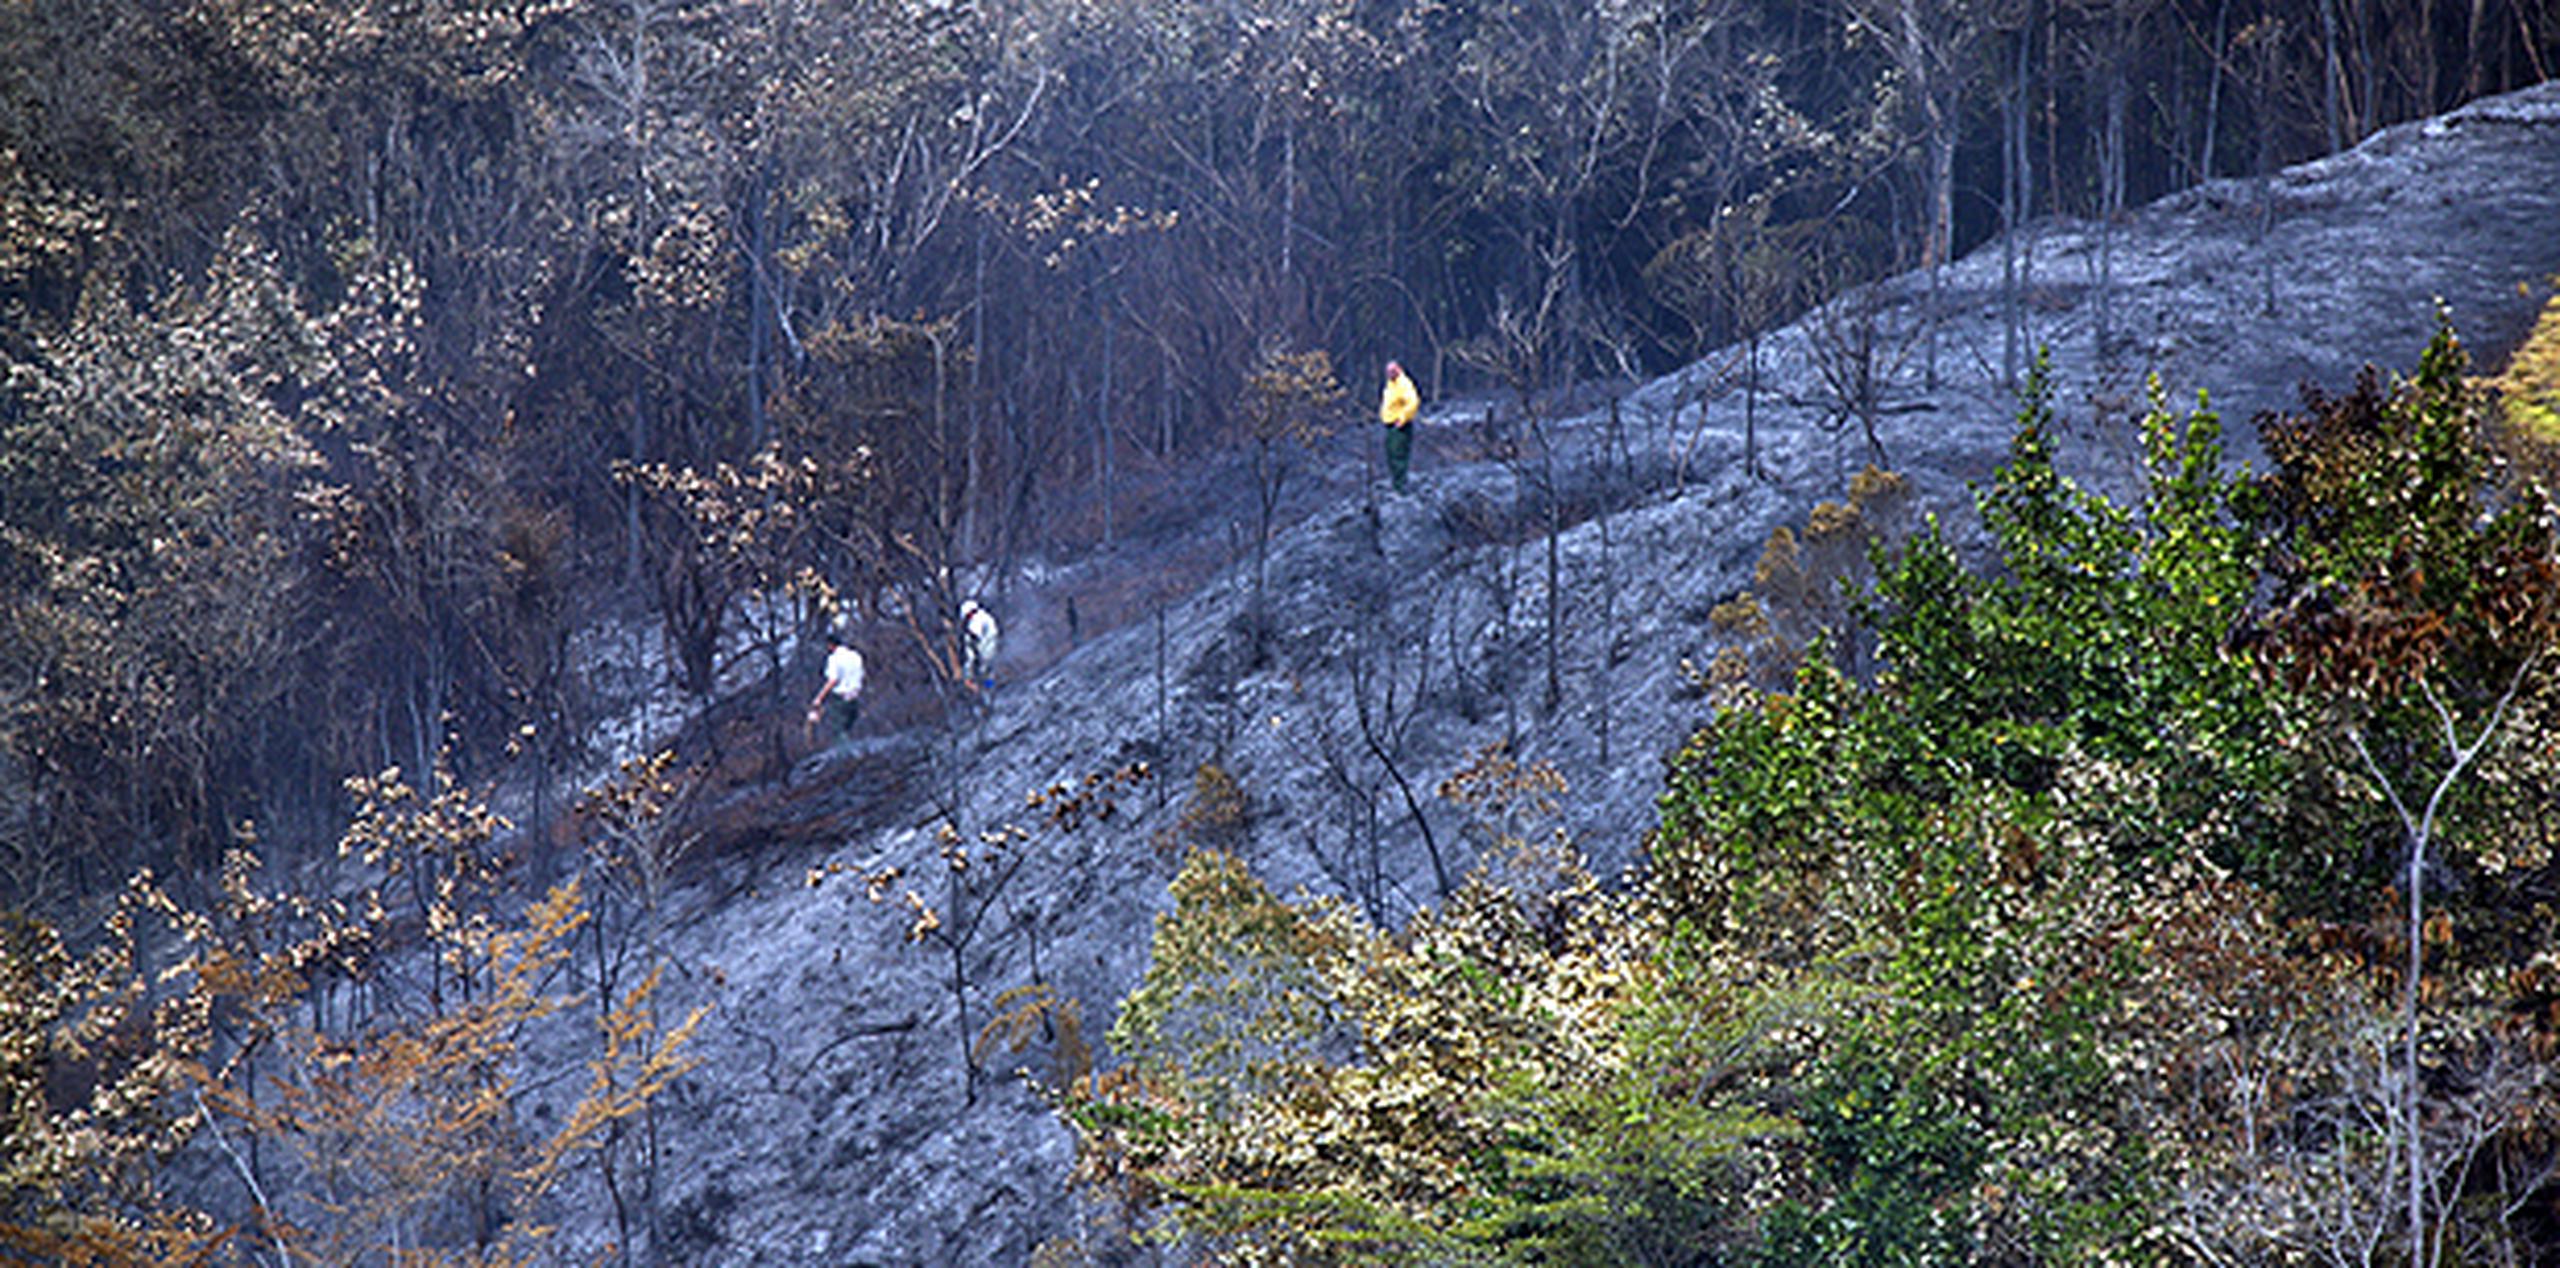 Bomberos forestales y personal del Departamento de Recursos Naturales y Ambientales (DRNA) permanecían en la zona monitoreando el siniestro, que se desató en una zona de difícil acceso. (jorge.ramirez@gfrmedia.com)